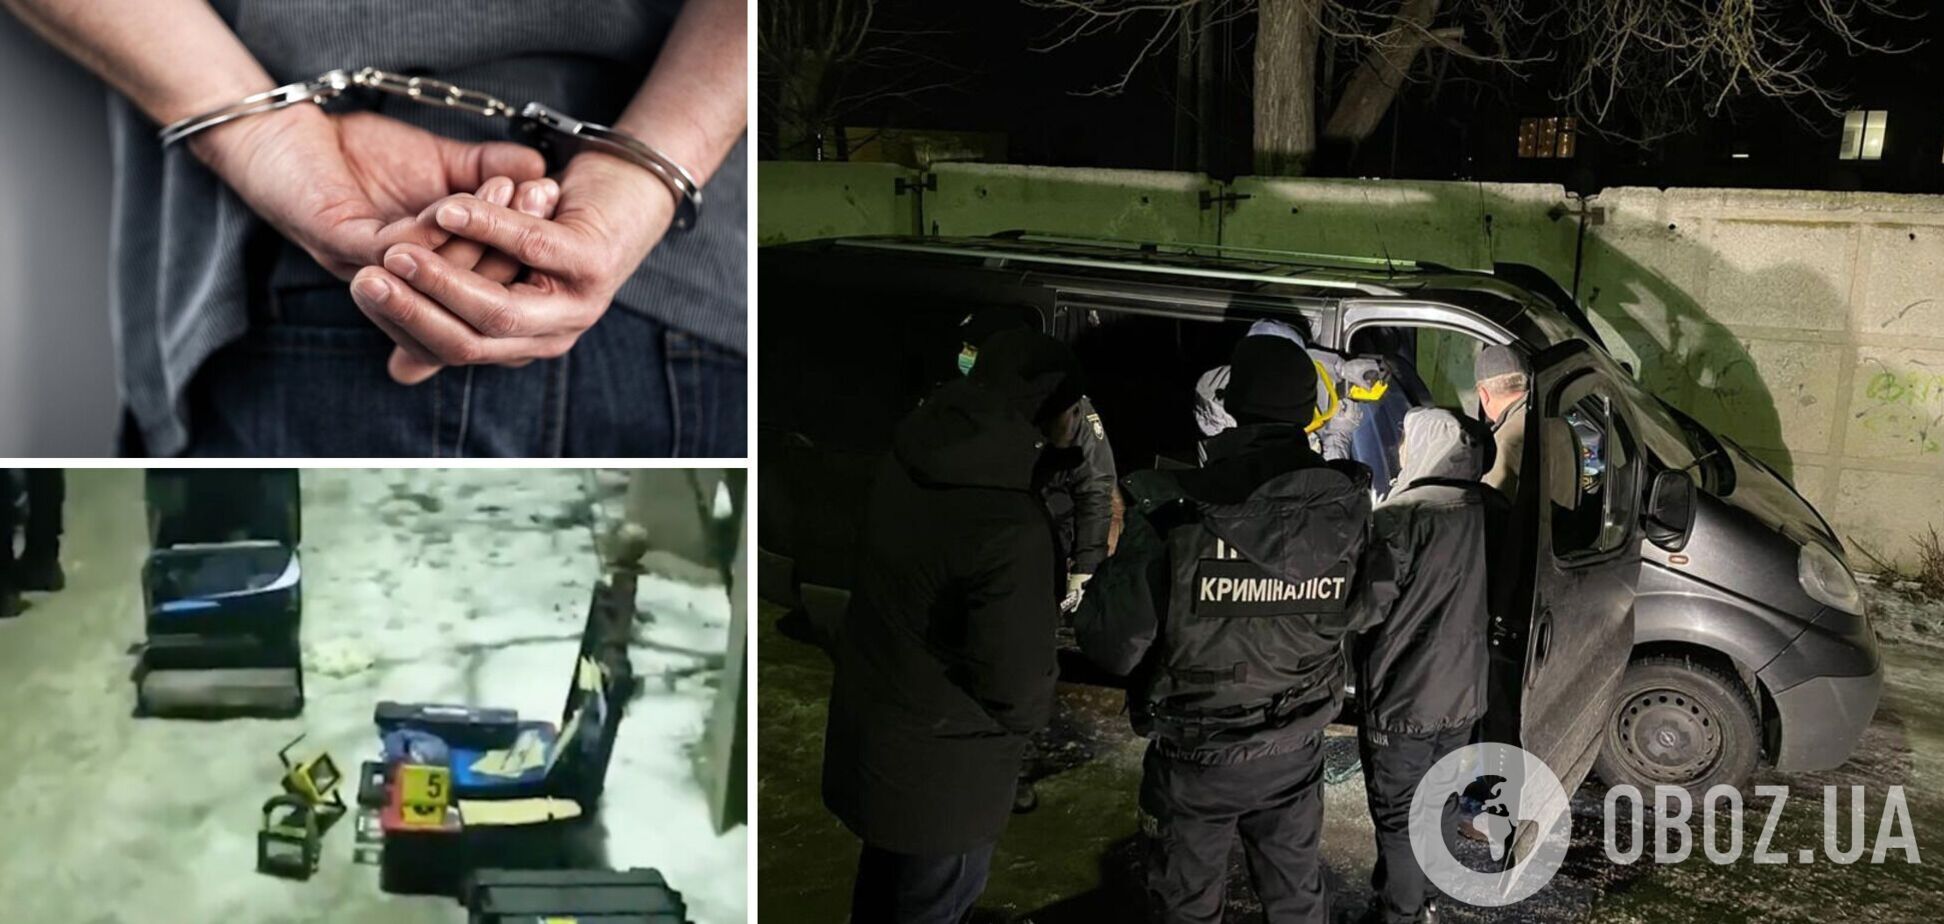 Убийство супругов на Киевщине: подозреваемого нашли, выяснились детали преступления. Фото и видео